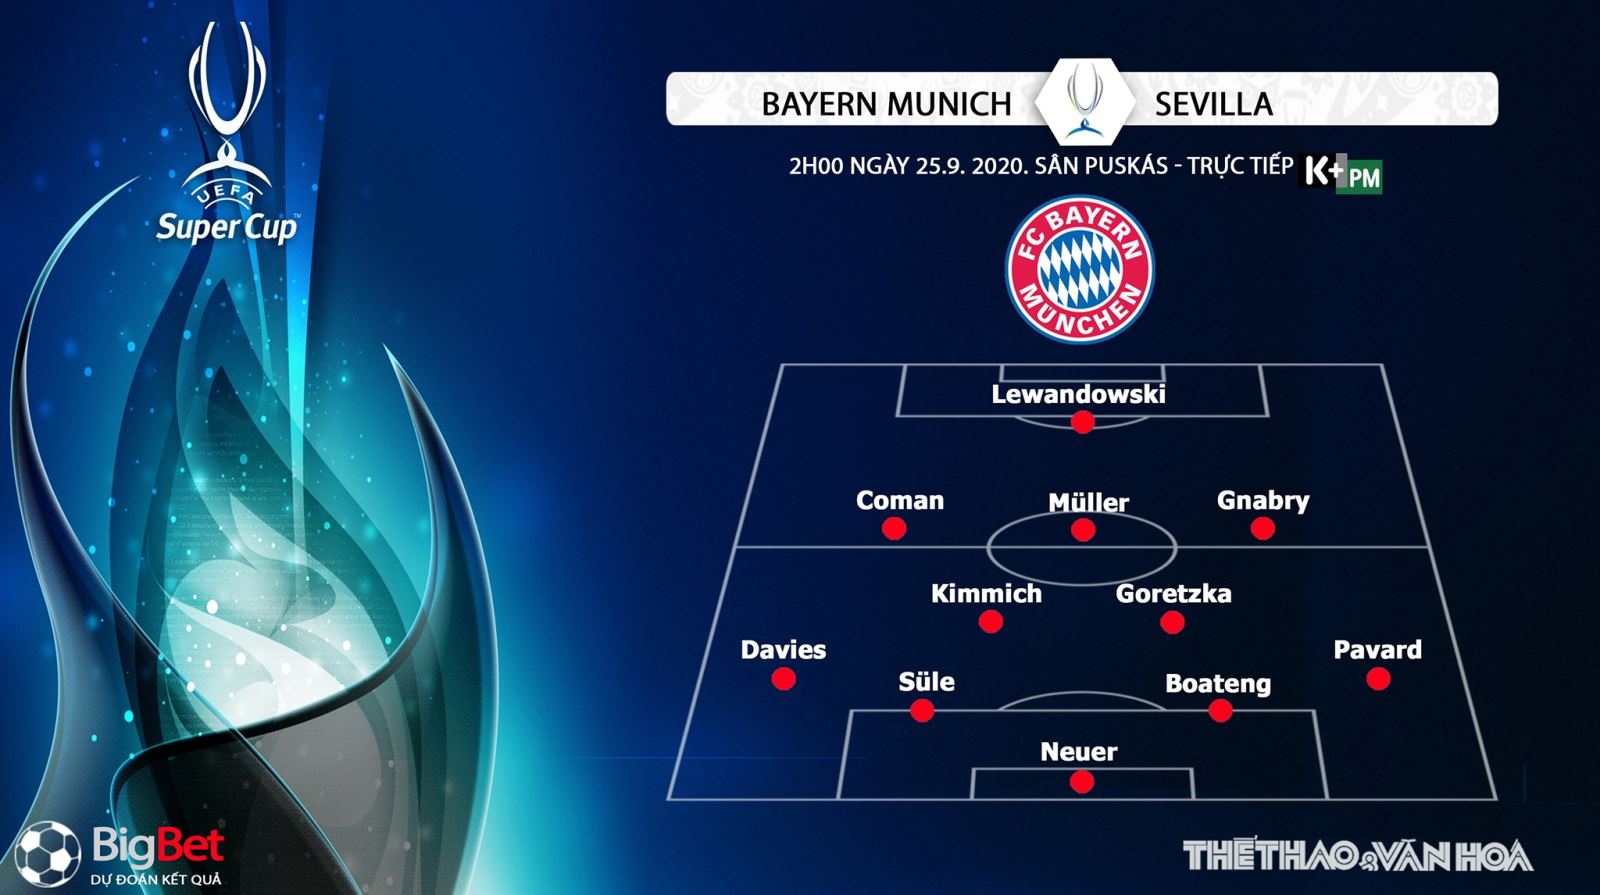 Bayern Munich vs Sevilla, Bayern Munich, Sevilla, nhận định bóng đá, trực tiếp bóng đá, nhận định bóng đá Bayern Munich vs Sevilla, kèo bóng đá Bayern Munich vs Sevilla, kèo thơm